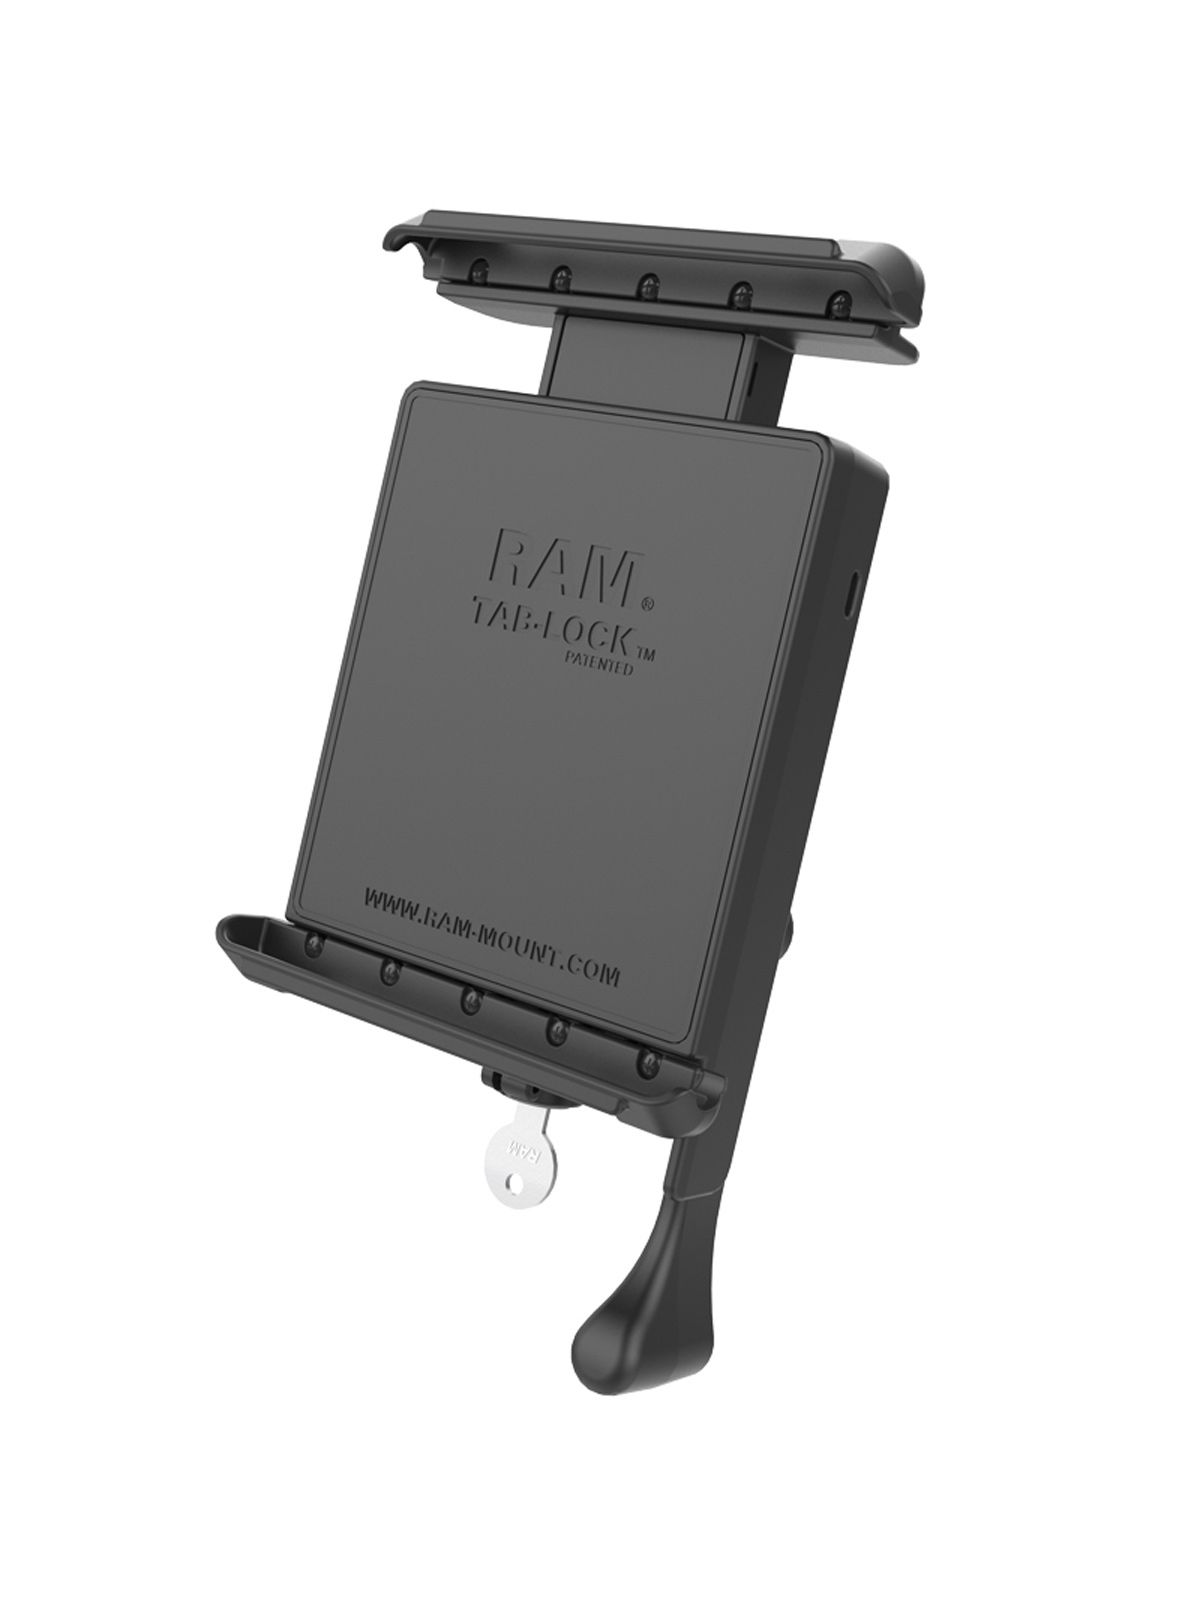 RAM Mounts Universal Tab-Lock Halteschale (abschließbar) für 7 Zoll Tablets wie Amazon Kindle Fire / Apple iPad mini / Google Nexus 7 (ohne Schutzgehäuse/-hüllen) - AMPS-Aufnahme, Schrauben-Set